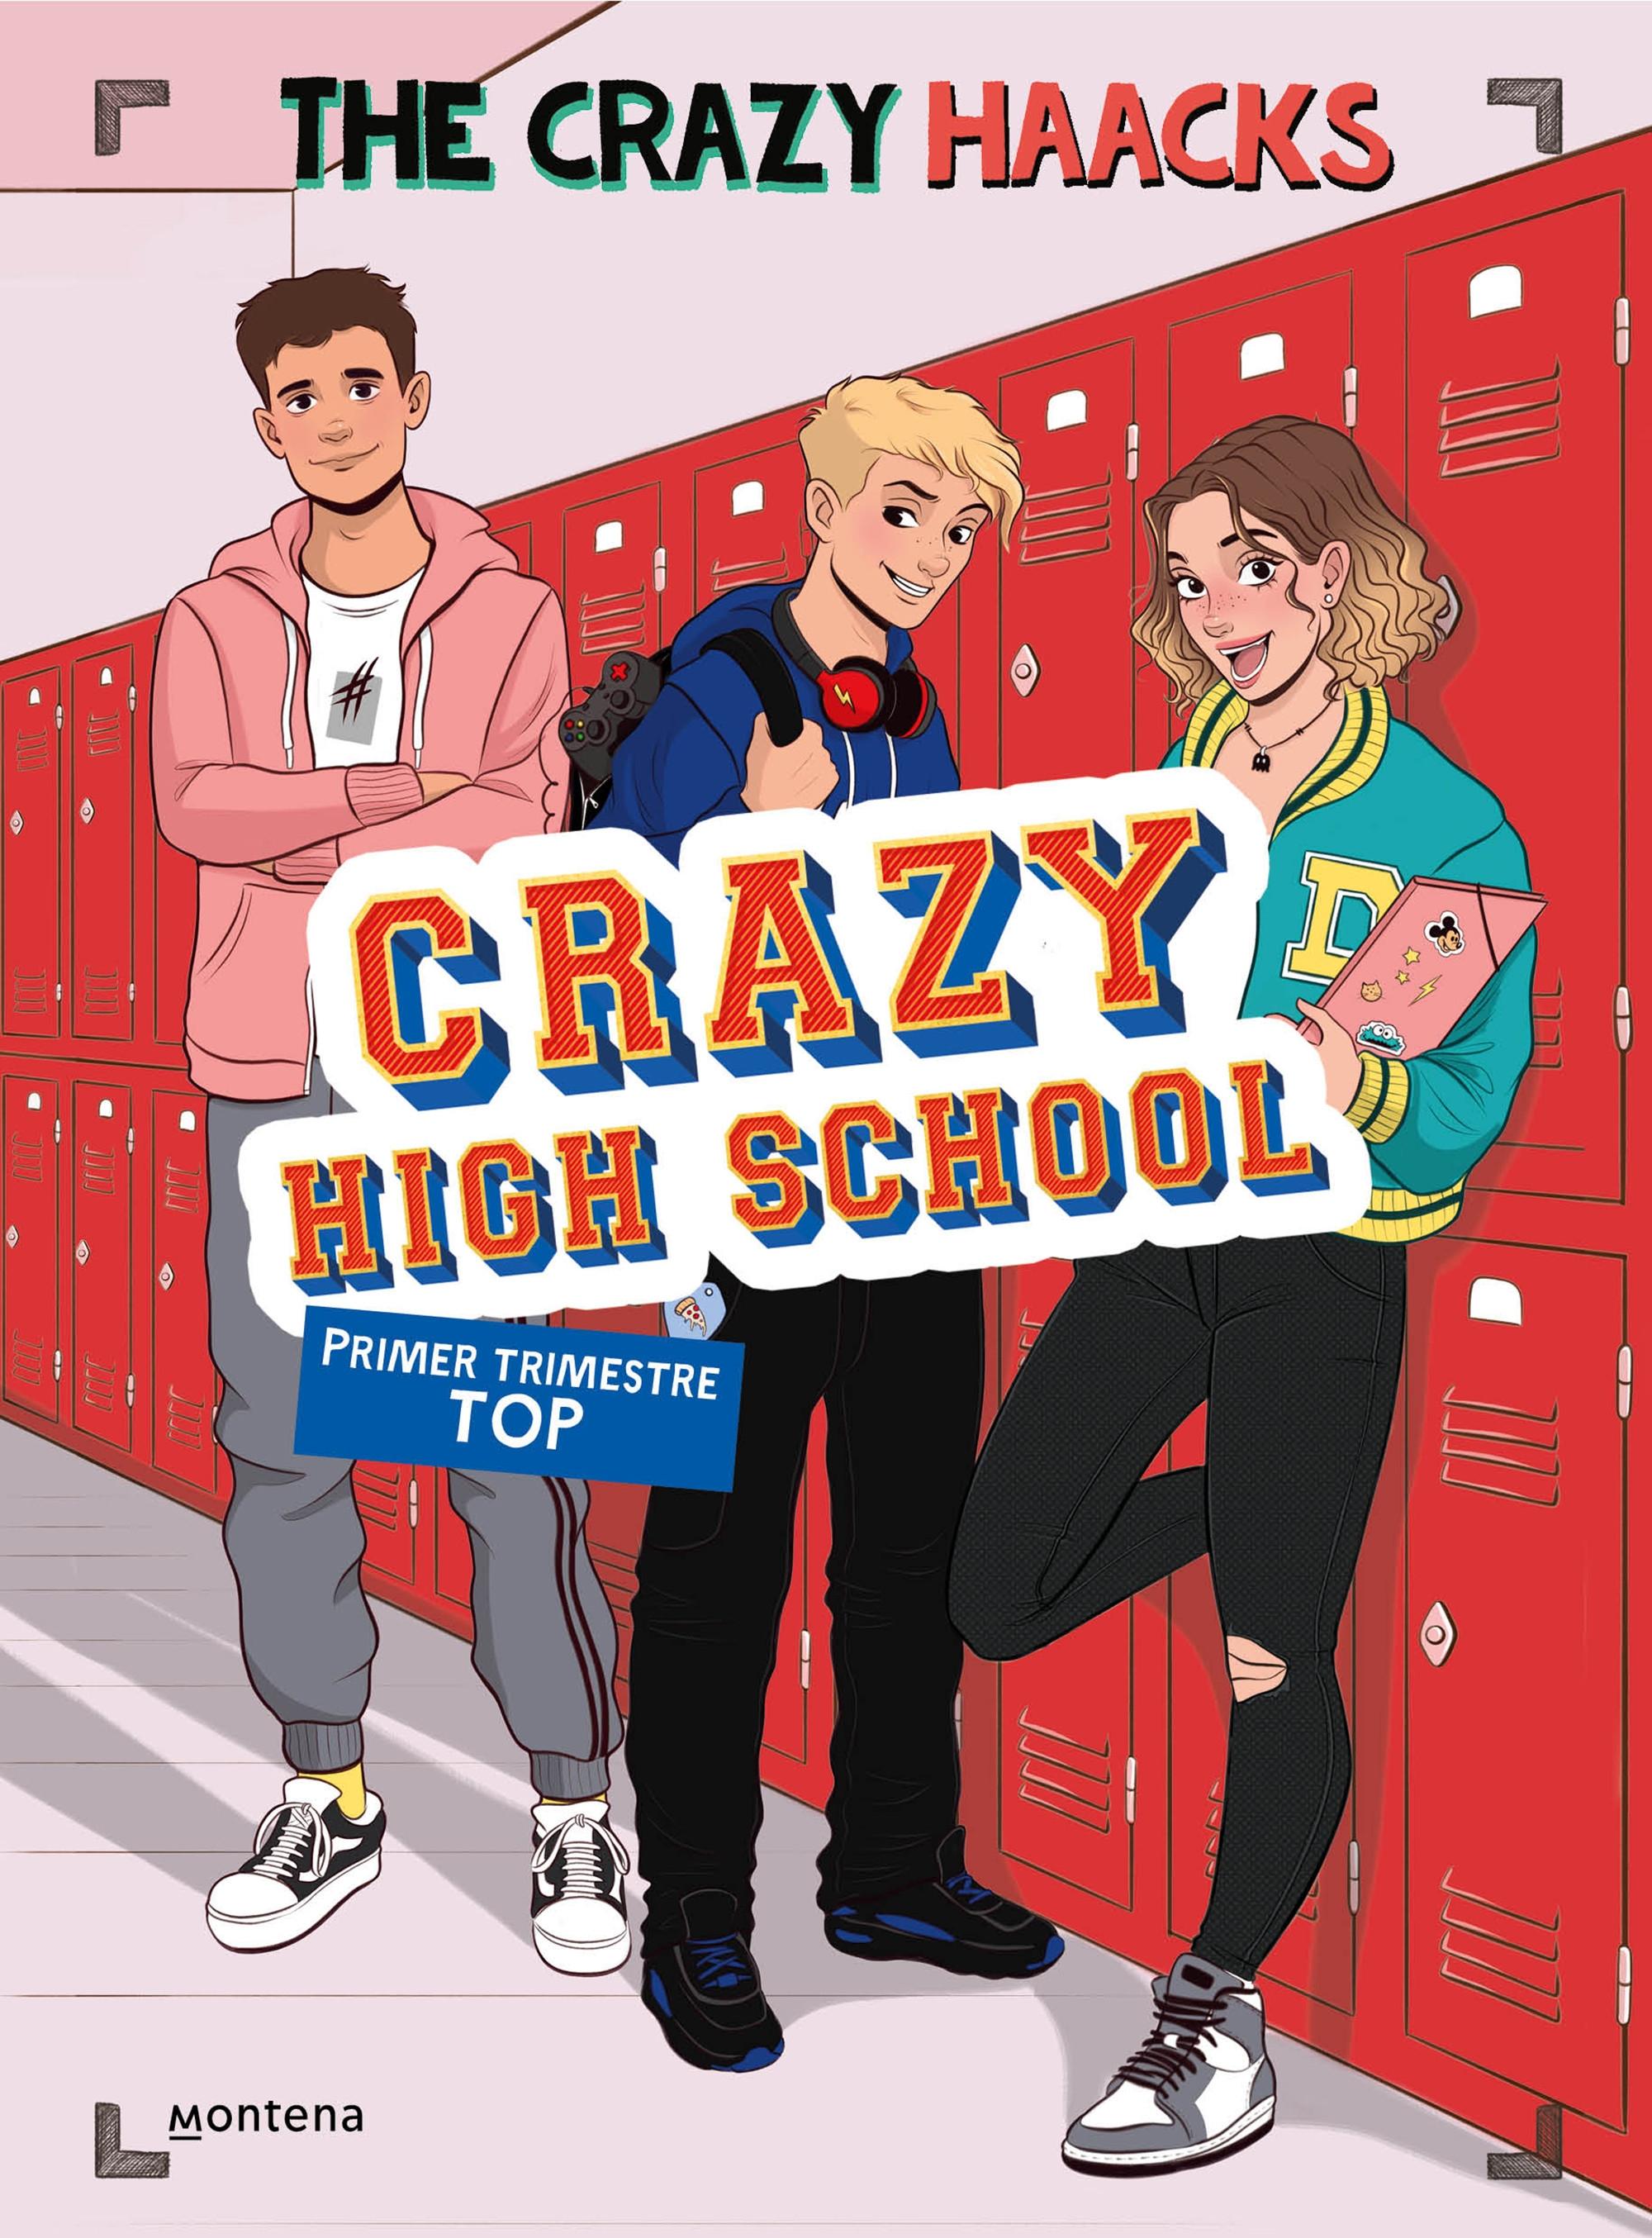 Primer trimestre top "Crazy High School"